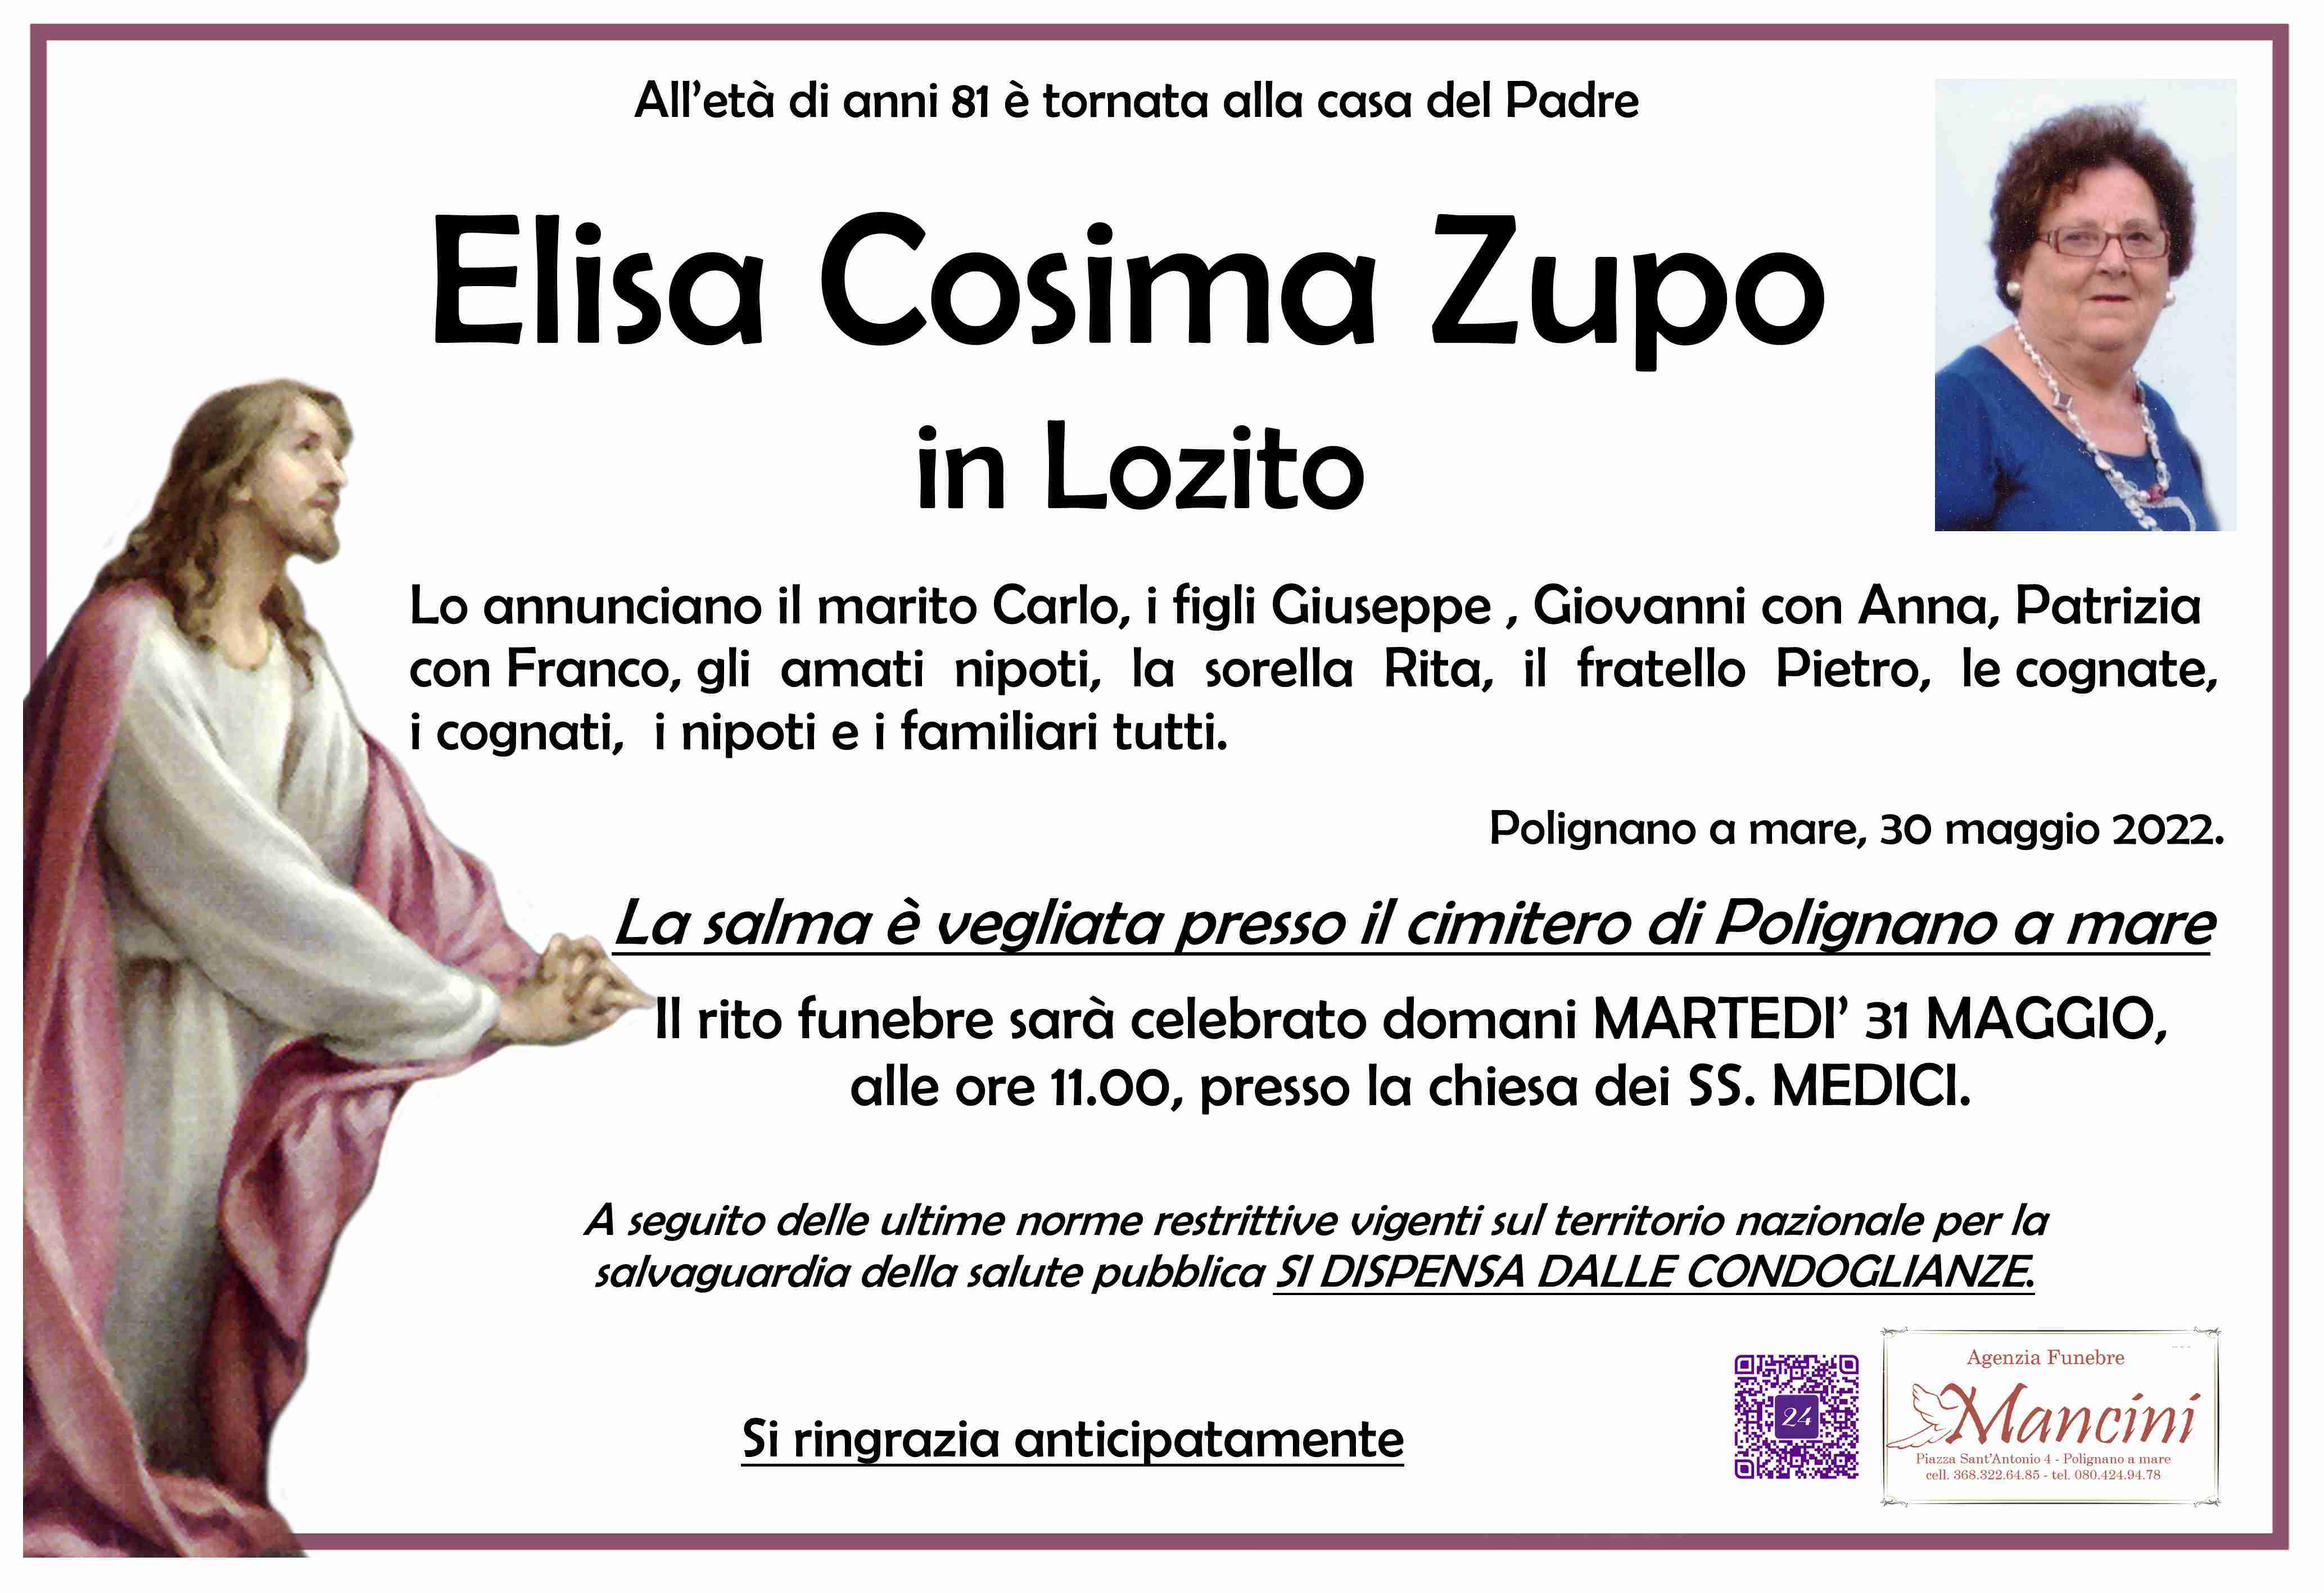 Elisa Cosima Zupo